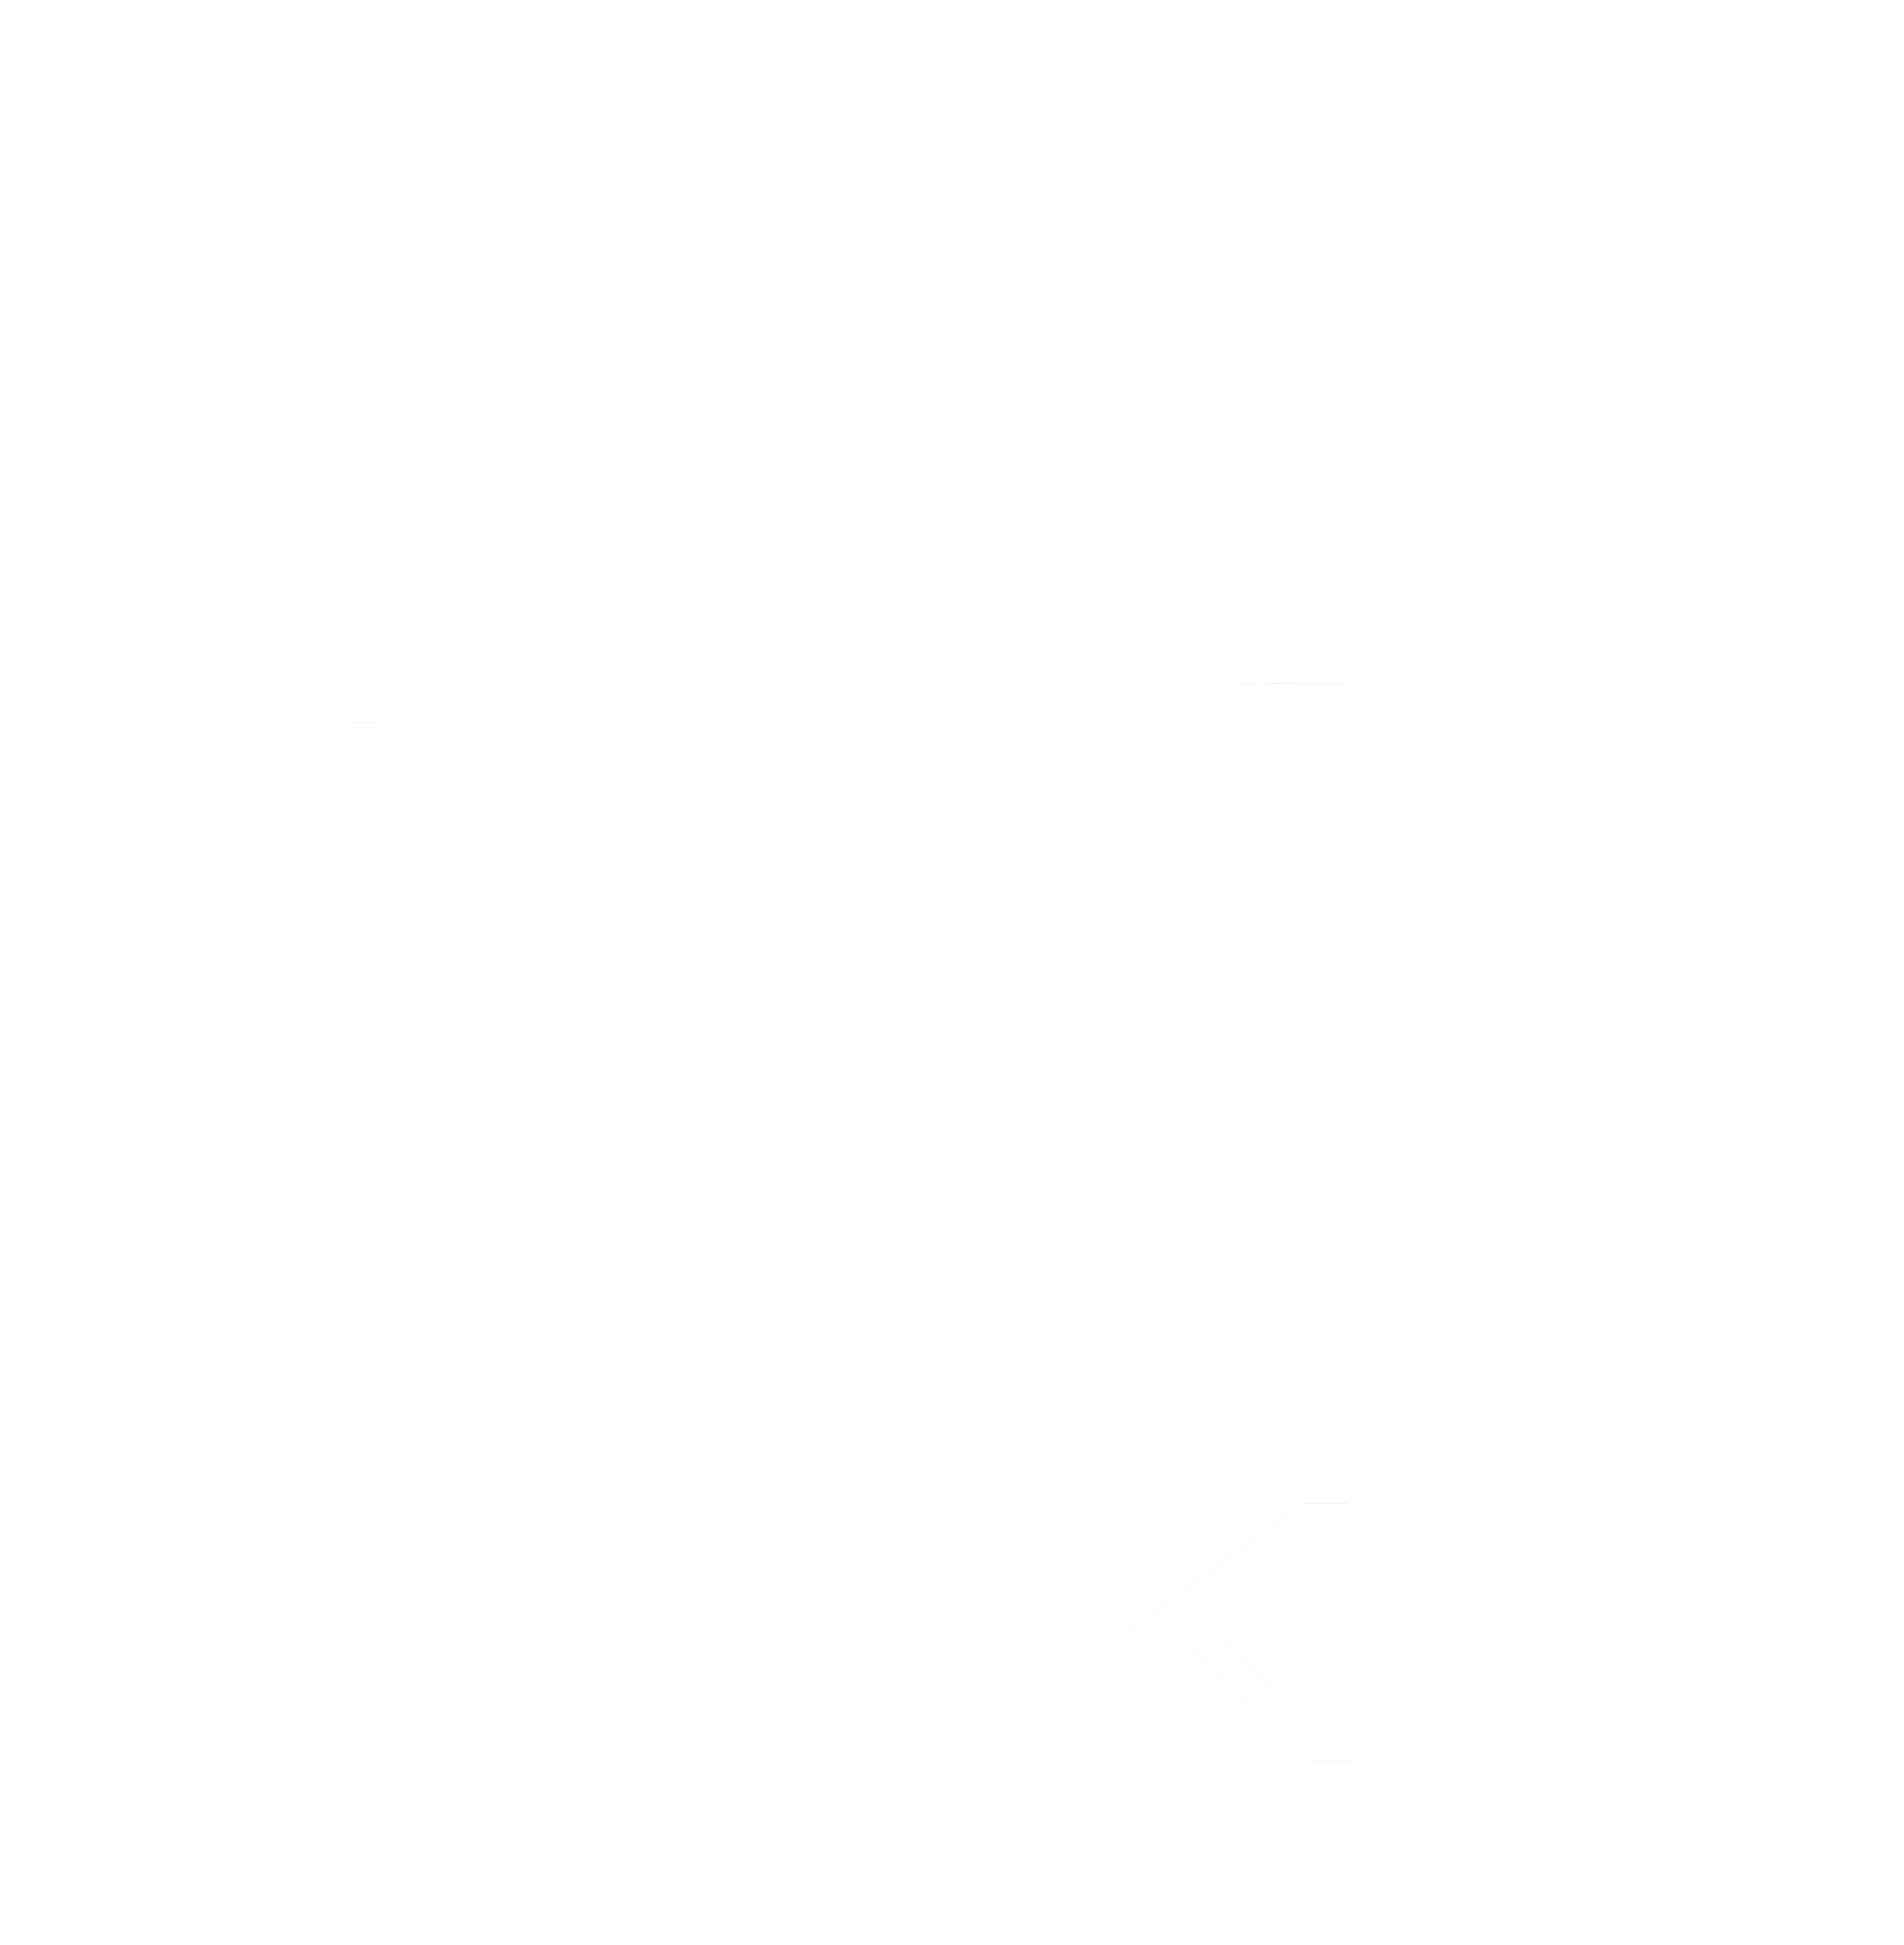 onskin laser studio